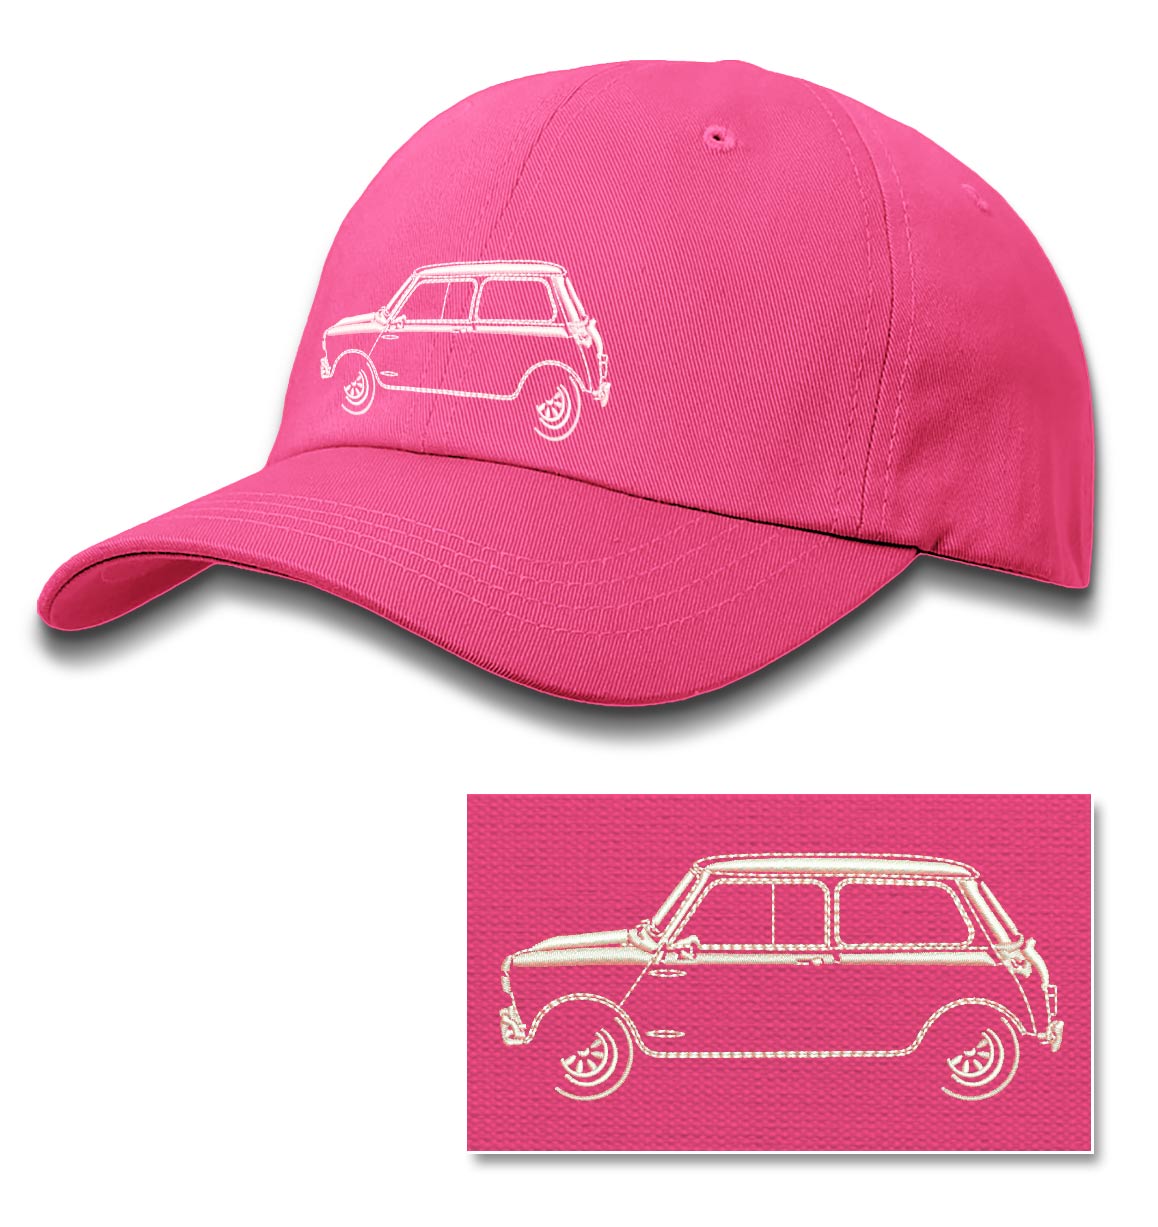 Baby Pink Pétillant Débutante baseball hat - The Austin Winery